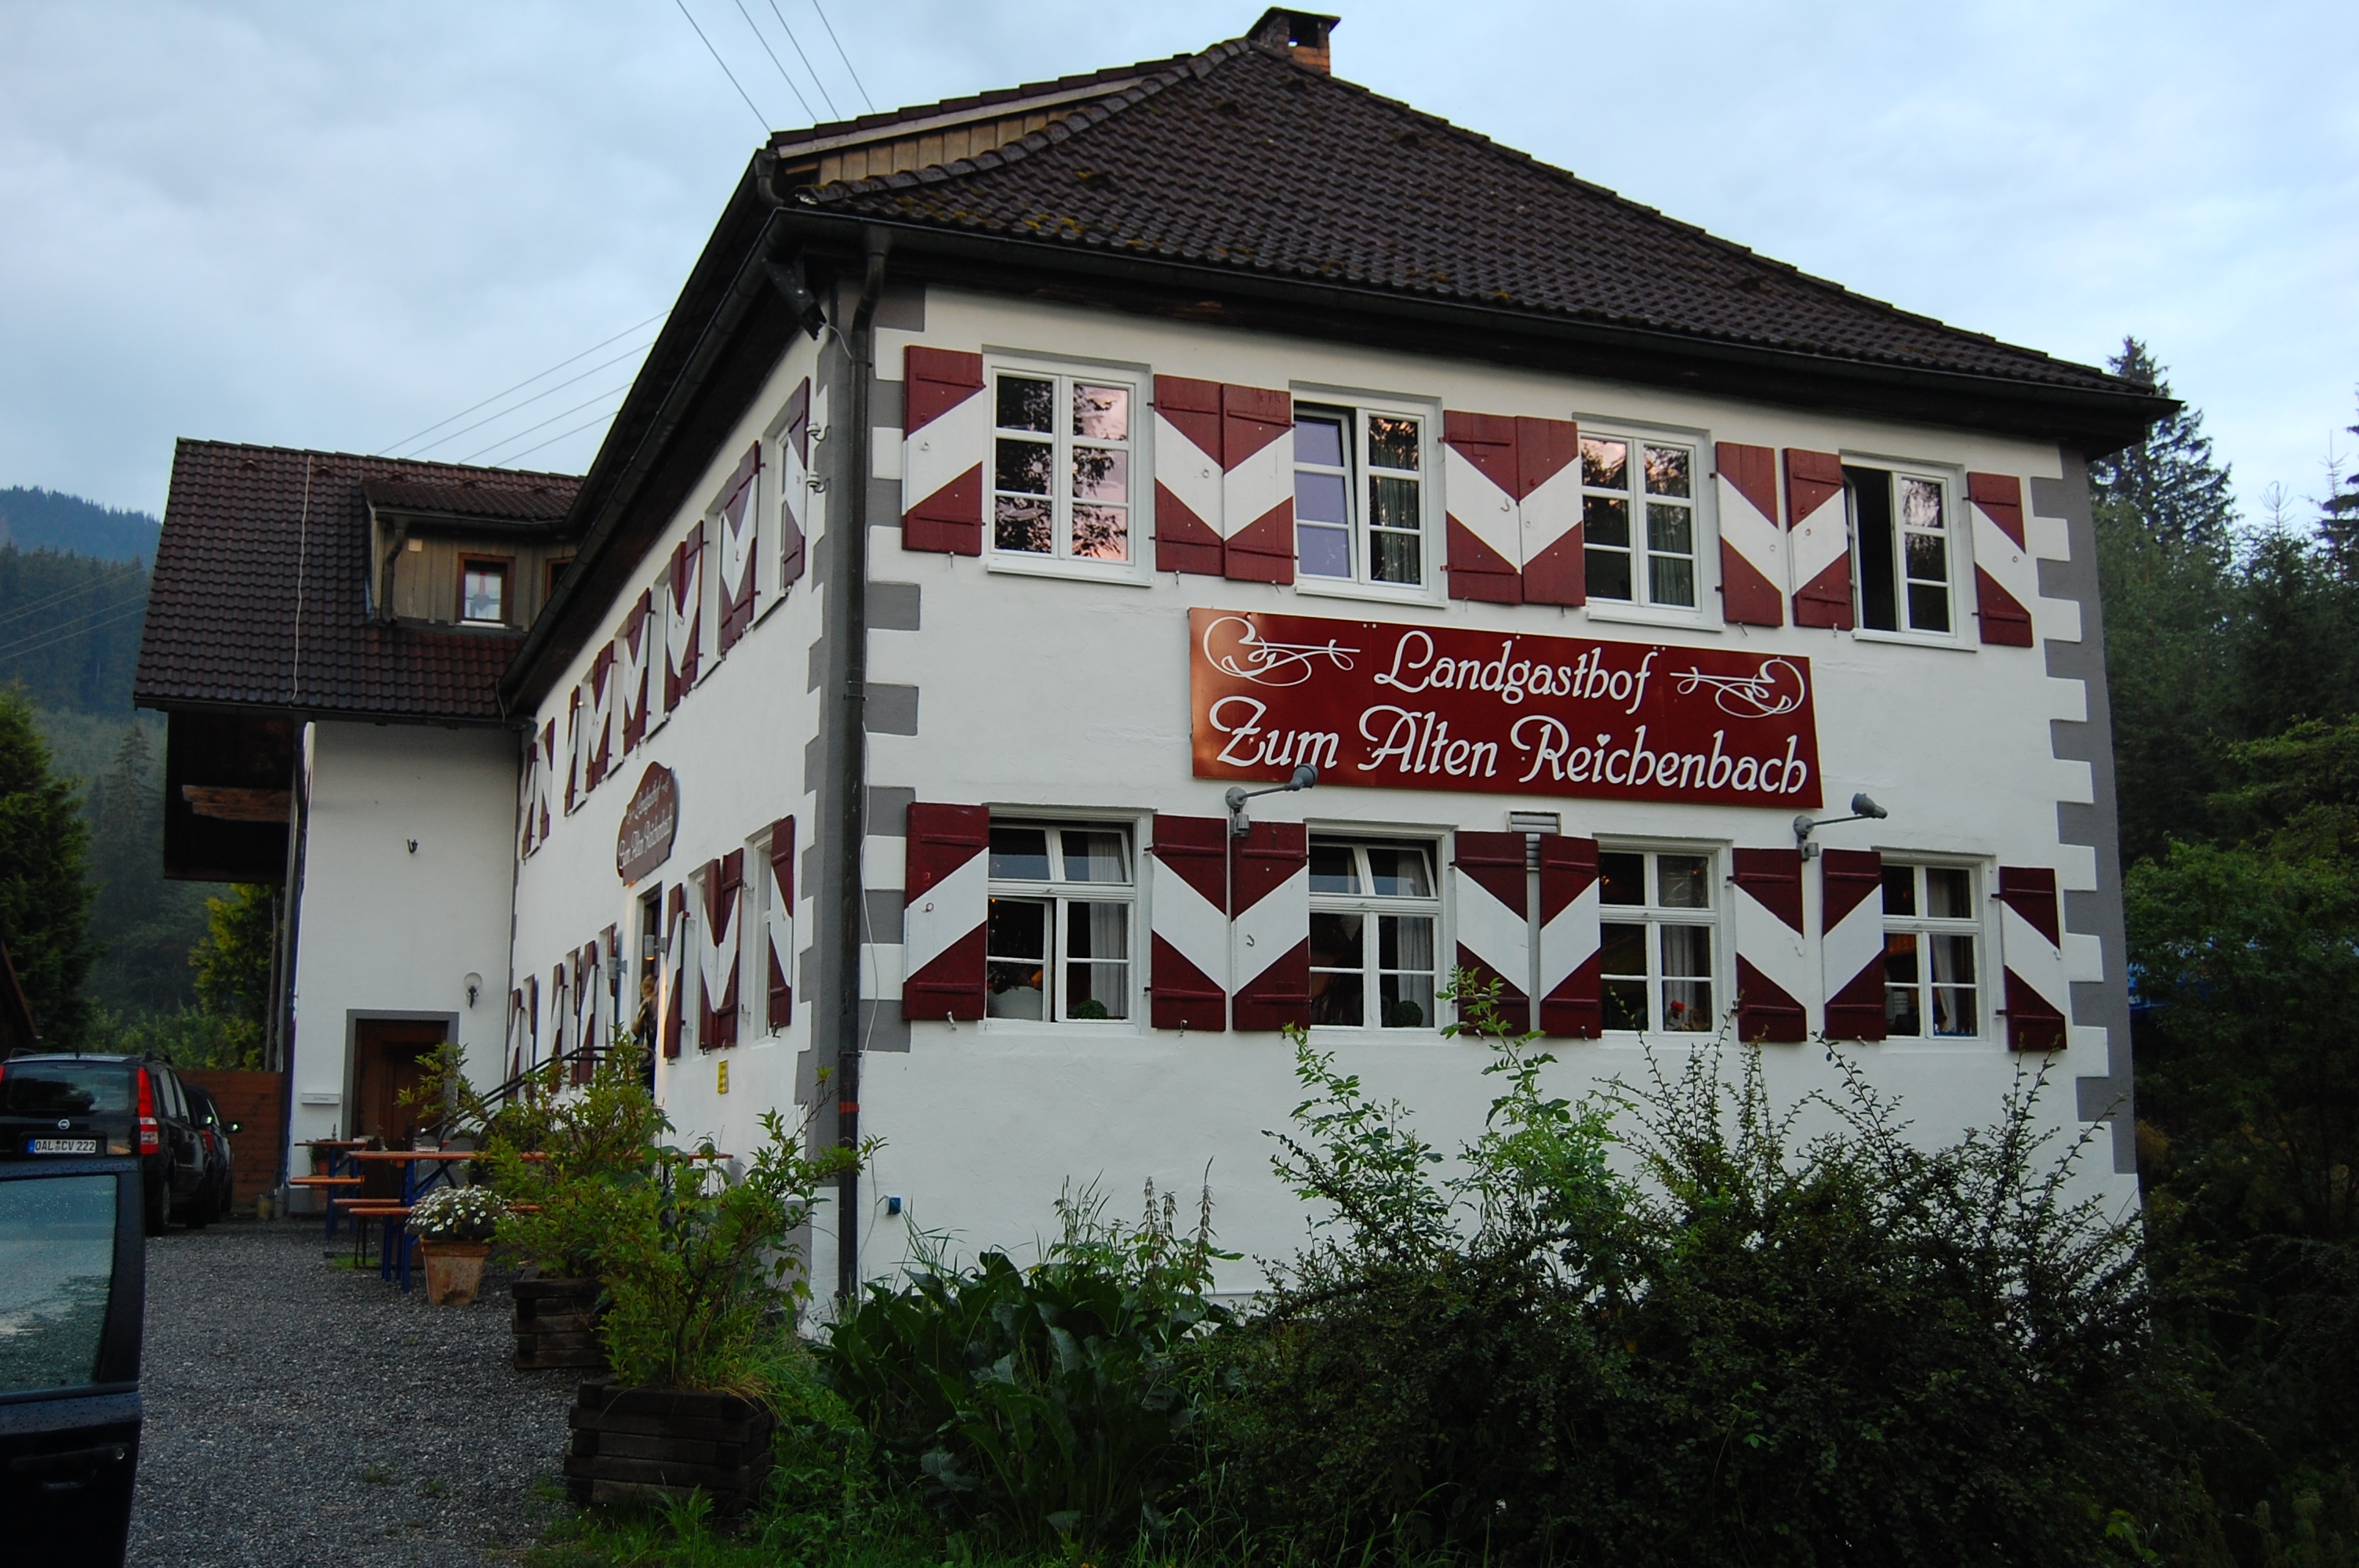 Regionale Küche im Landgasthaus "Zum alten Reichenbach"